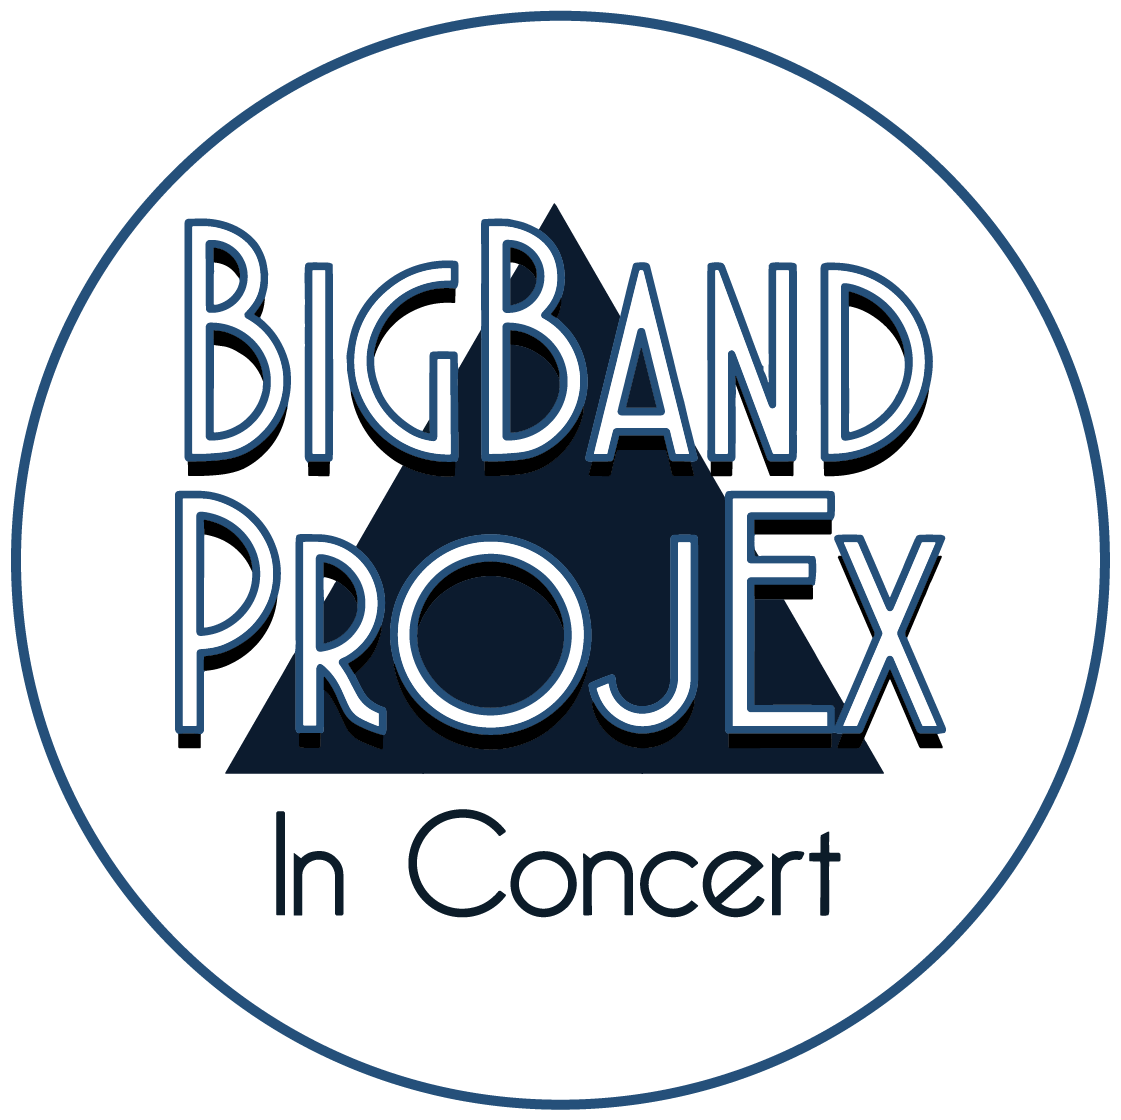 Big Band ProjEx